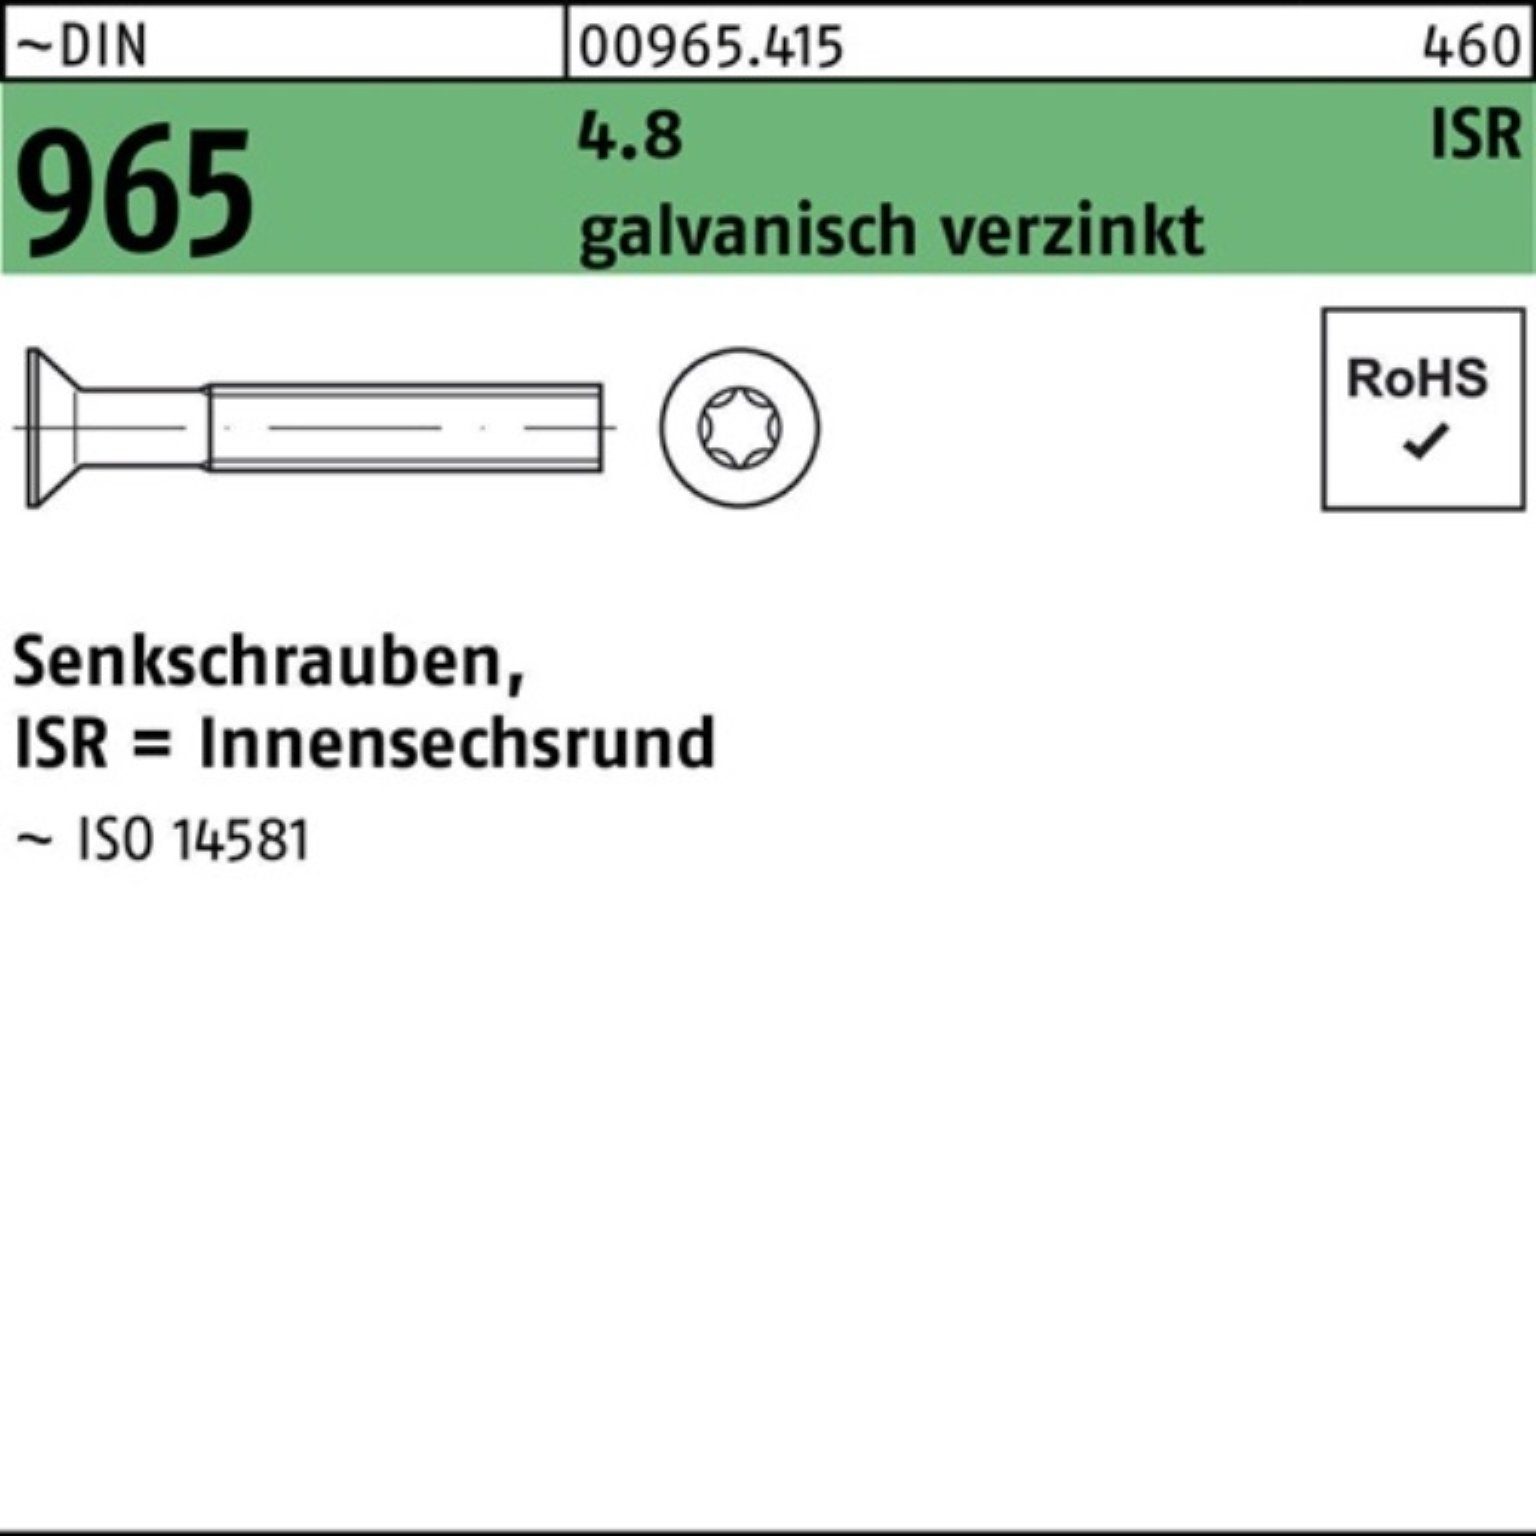 Reyher Senkschraube 2000er M4x 6-T20 Senkschraube 965 Pack 4.8 galv.verz. 2000St. DIN ISR